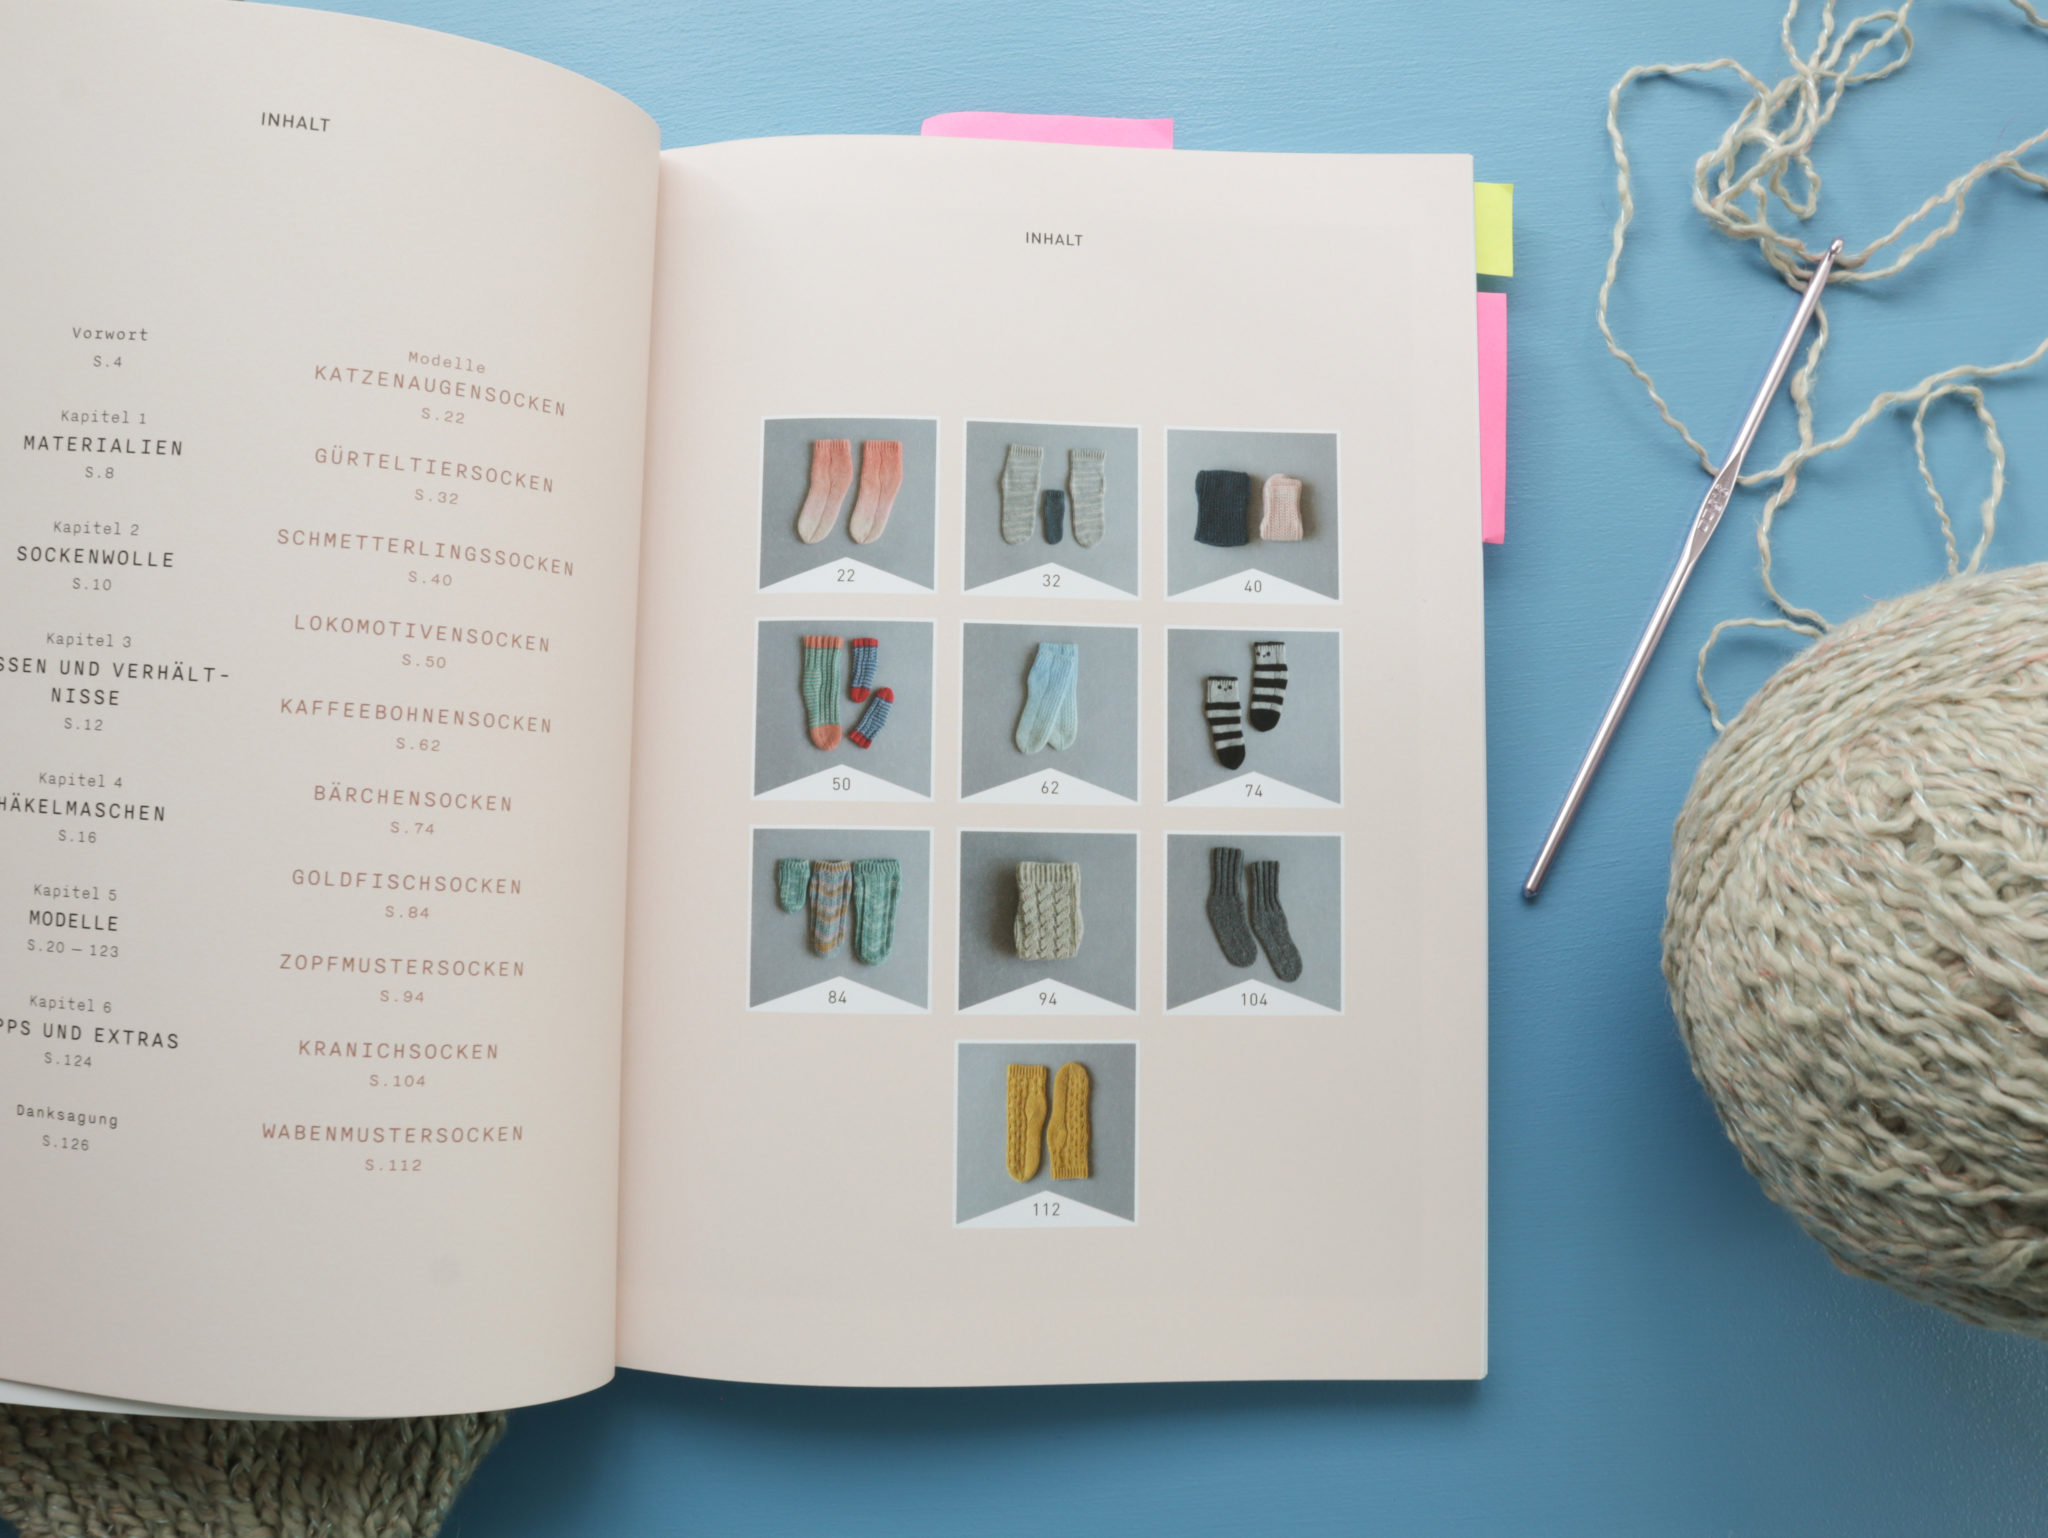 Blick ins Buch auf die Inhaltsangabe zu den Sockenmodellen. Links stehen die Modell-Überschriften, rechts gibt es die passenden Bilder dazu.